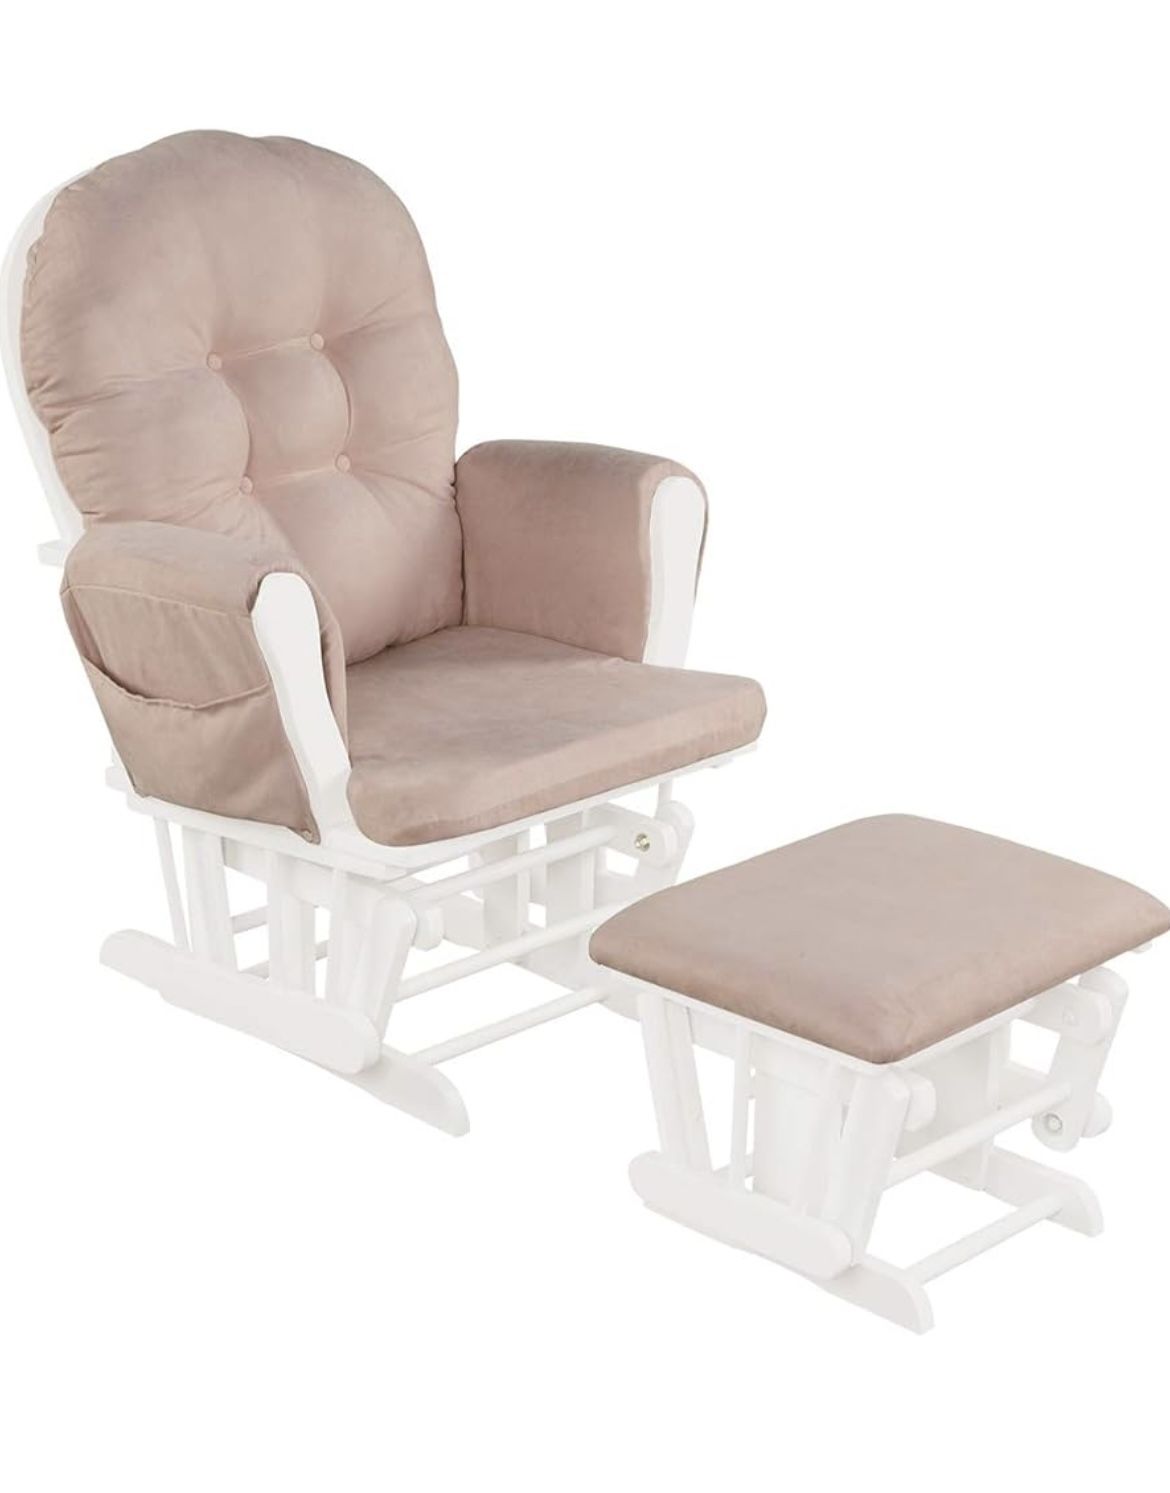 Nursery Glider Chair - Pink